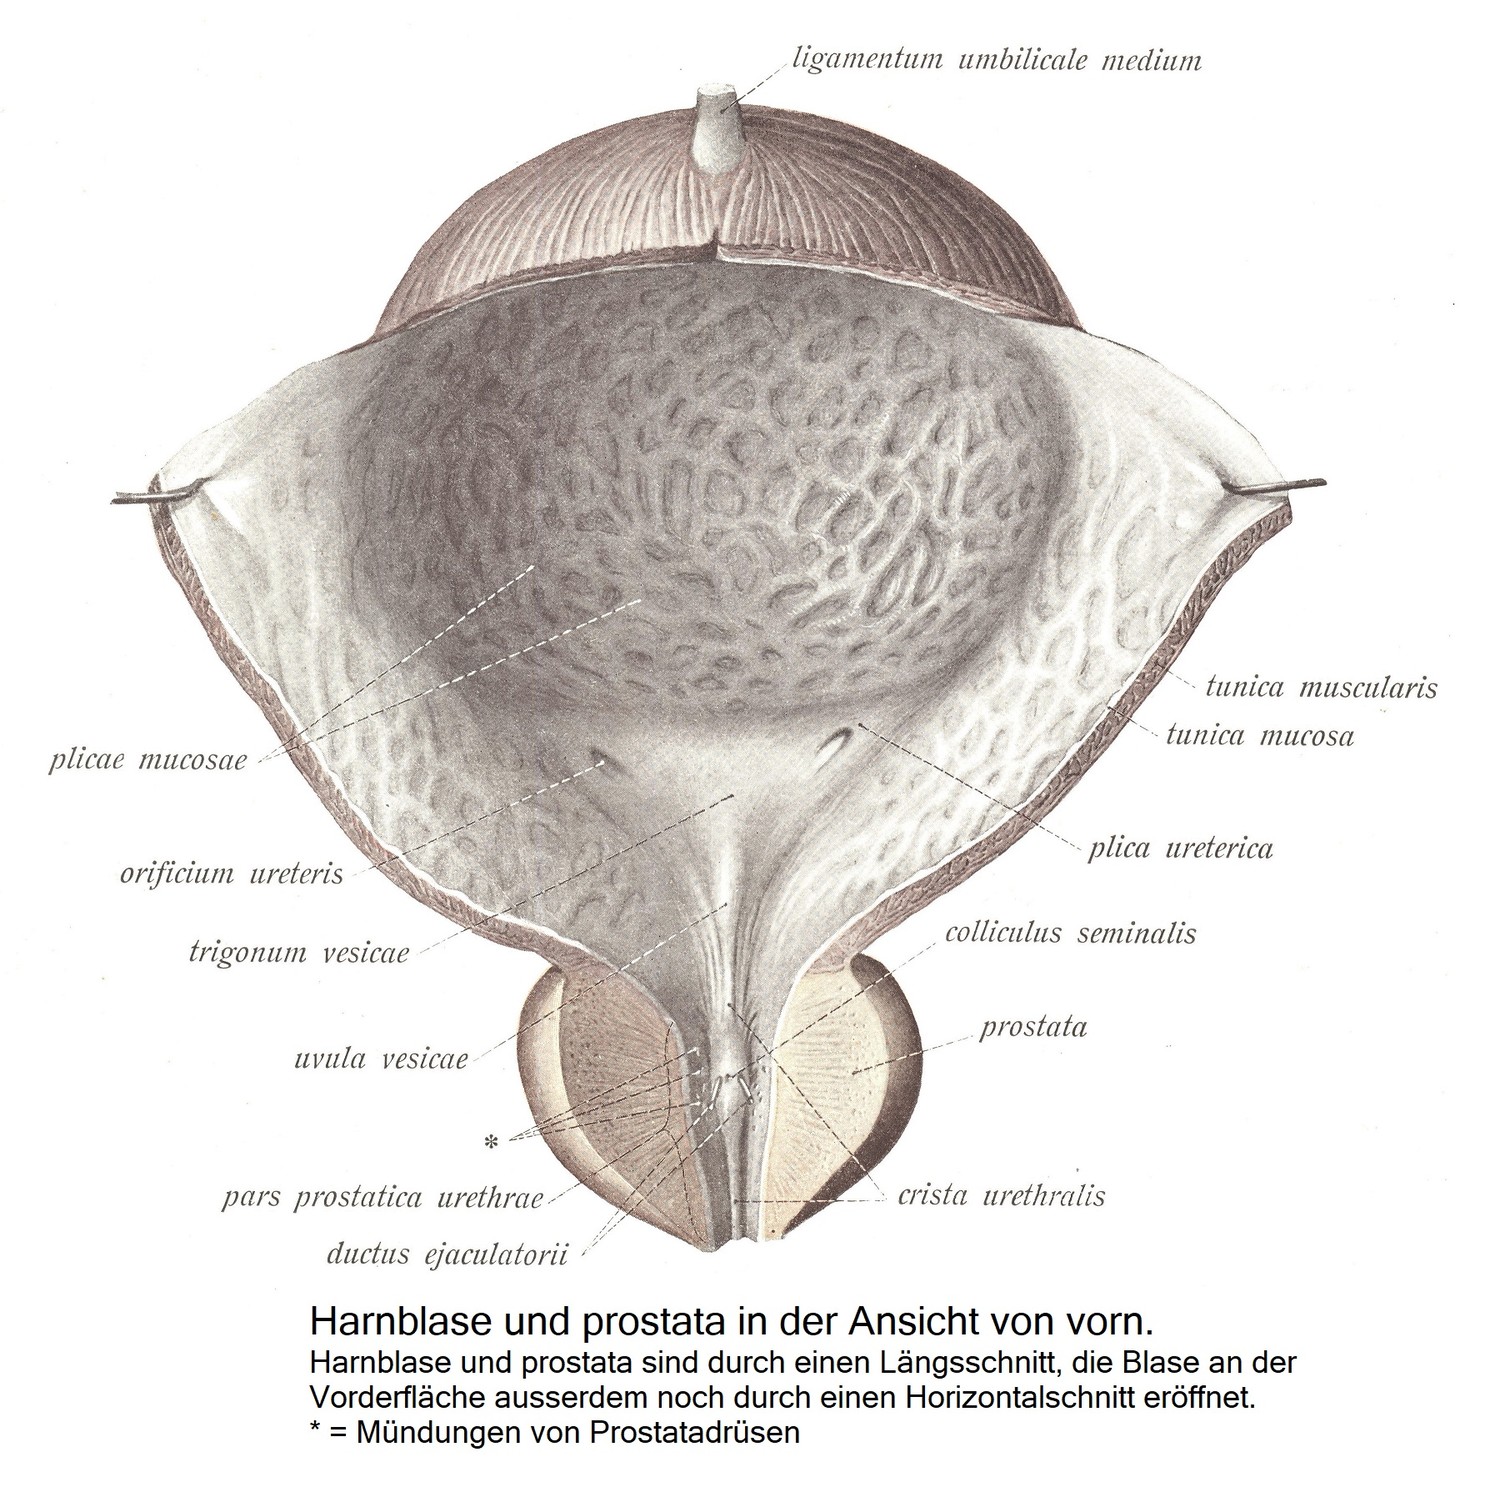 Мочевой пузырь и простата спереди. Мочевой пузырь и предстательную железу вскрывают продольным разрезом, переднюю поверхность мочевого пузыря также вскрывают горизонтальным разрезом. * = устья предстательной железы.